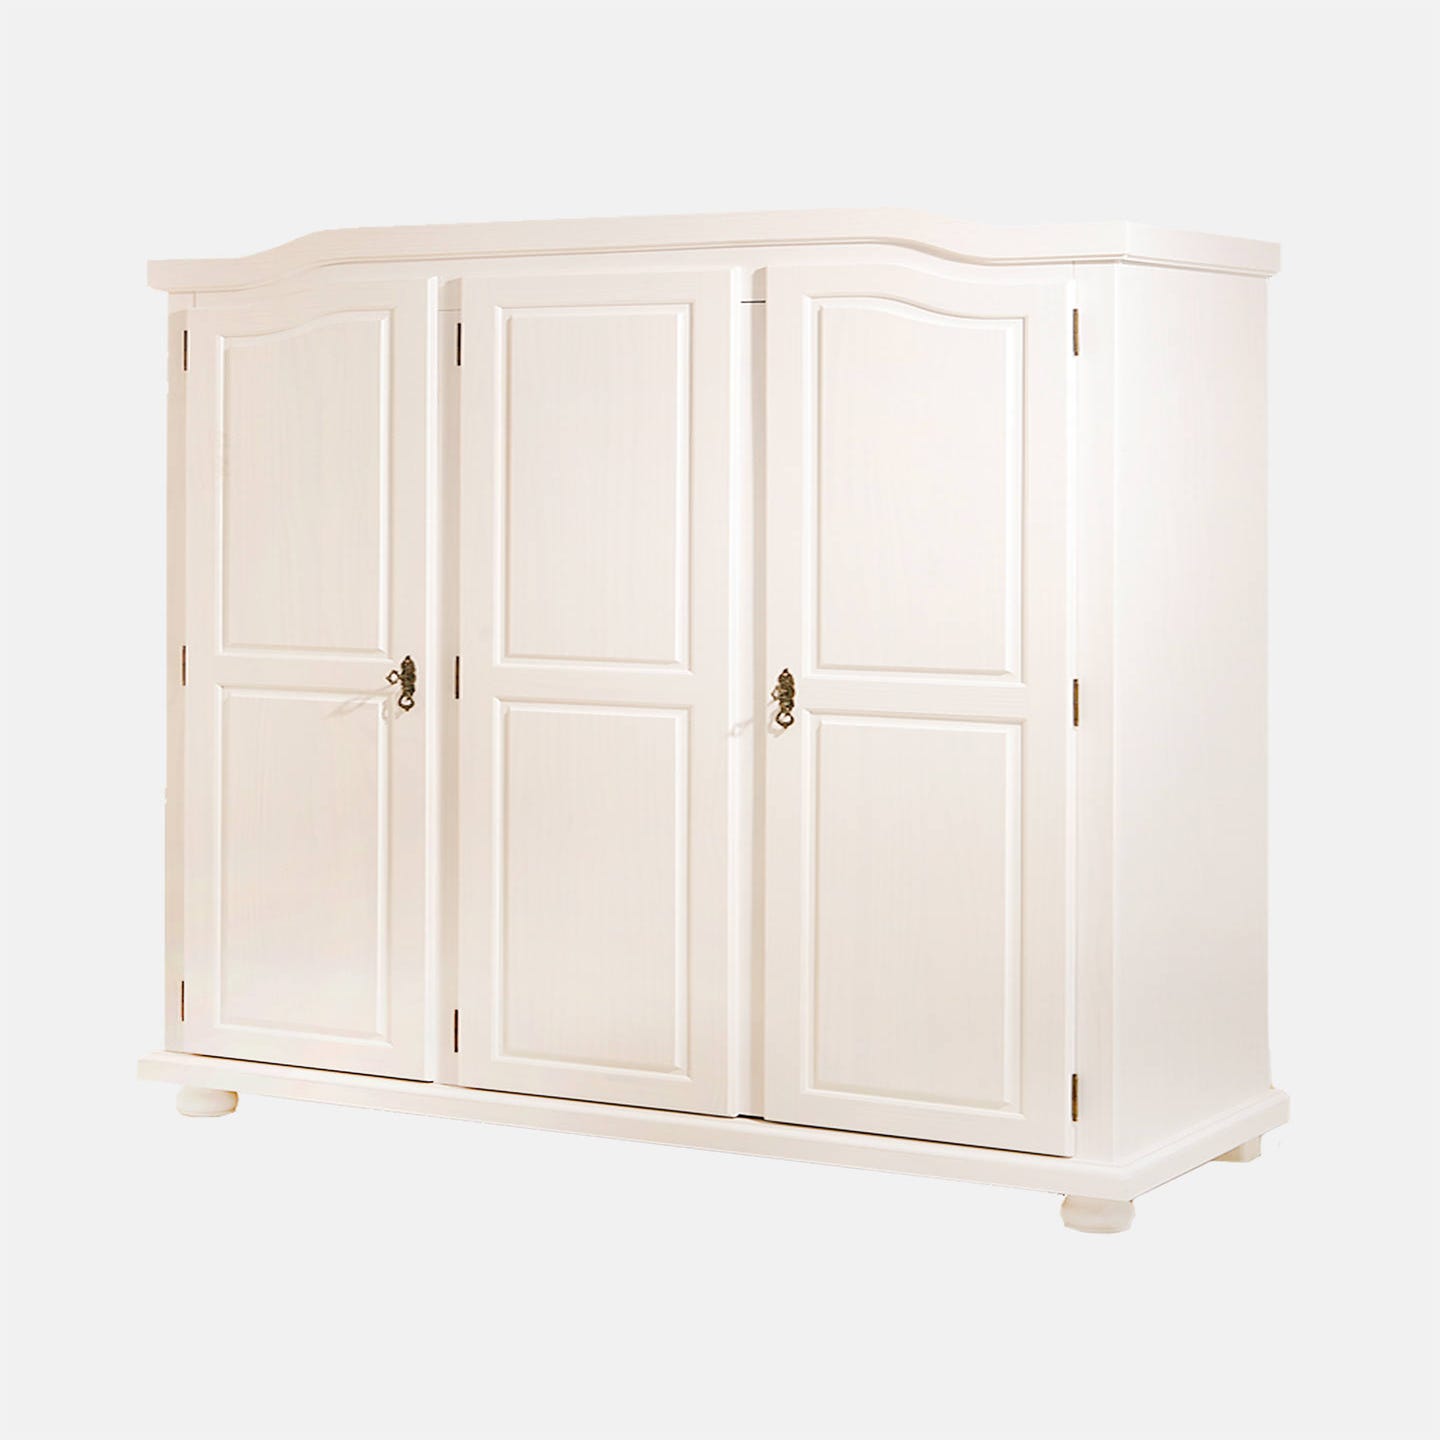 Armoire à trois portes battantes avec étagères internes en pin massif,  coloris blanc, 150 x 180 x 56 cm.